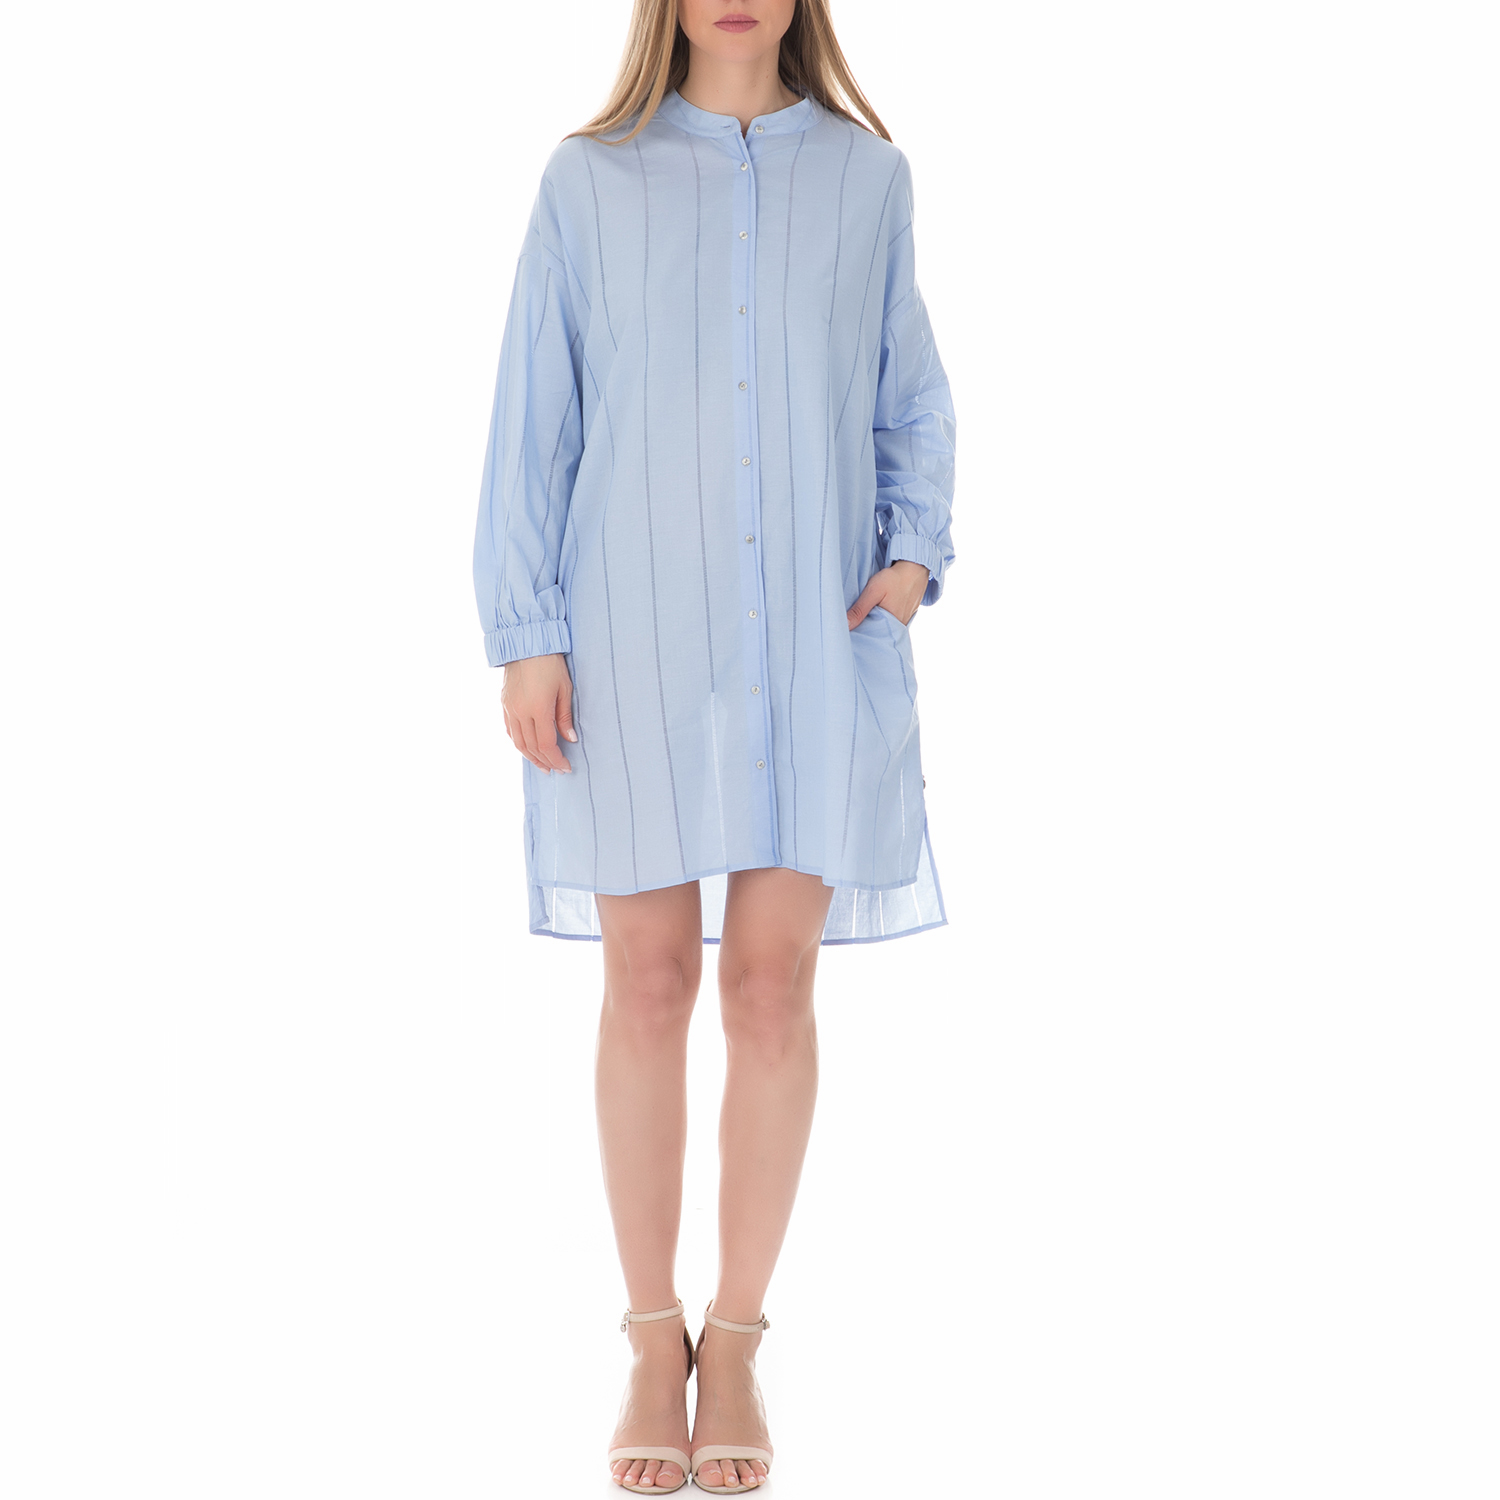 Γυναικεία/Ρούχα/Φορέματα/Μίνι SCOTCH & SODA - Γυναικείο οversized φόρεμα SCOTCH & SODA μπλε